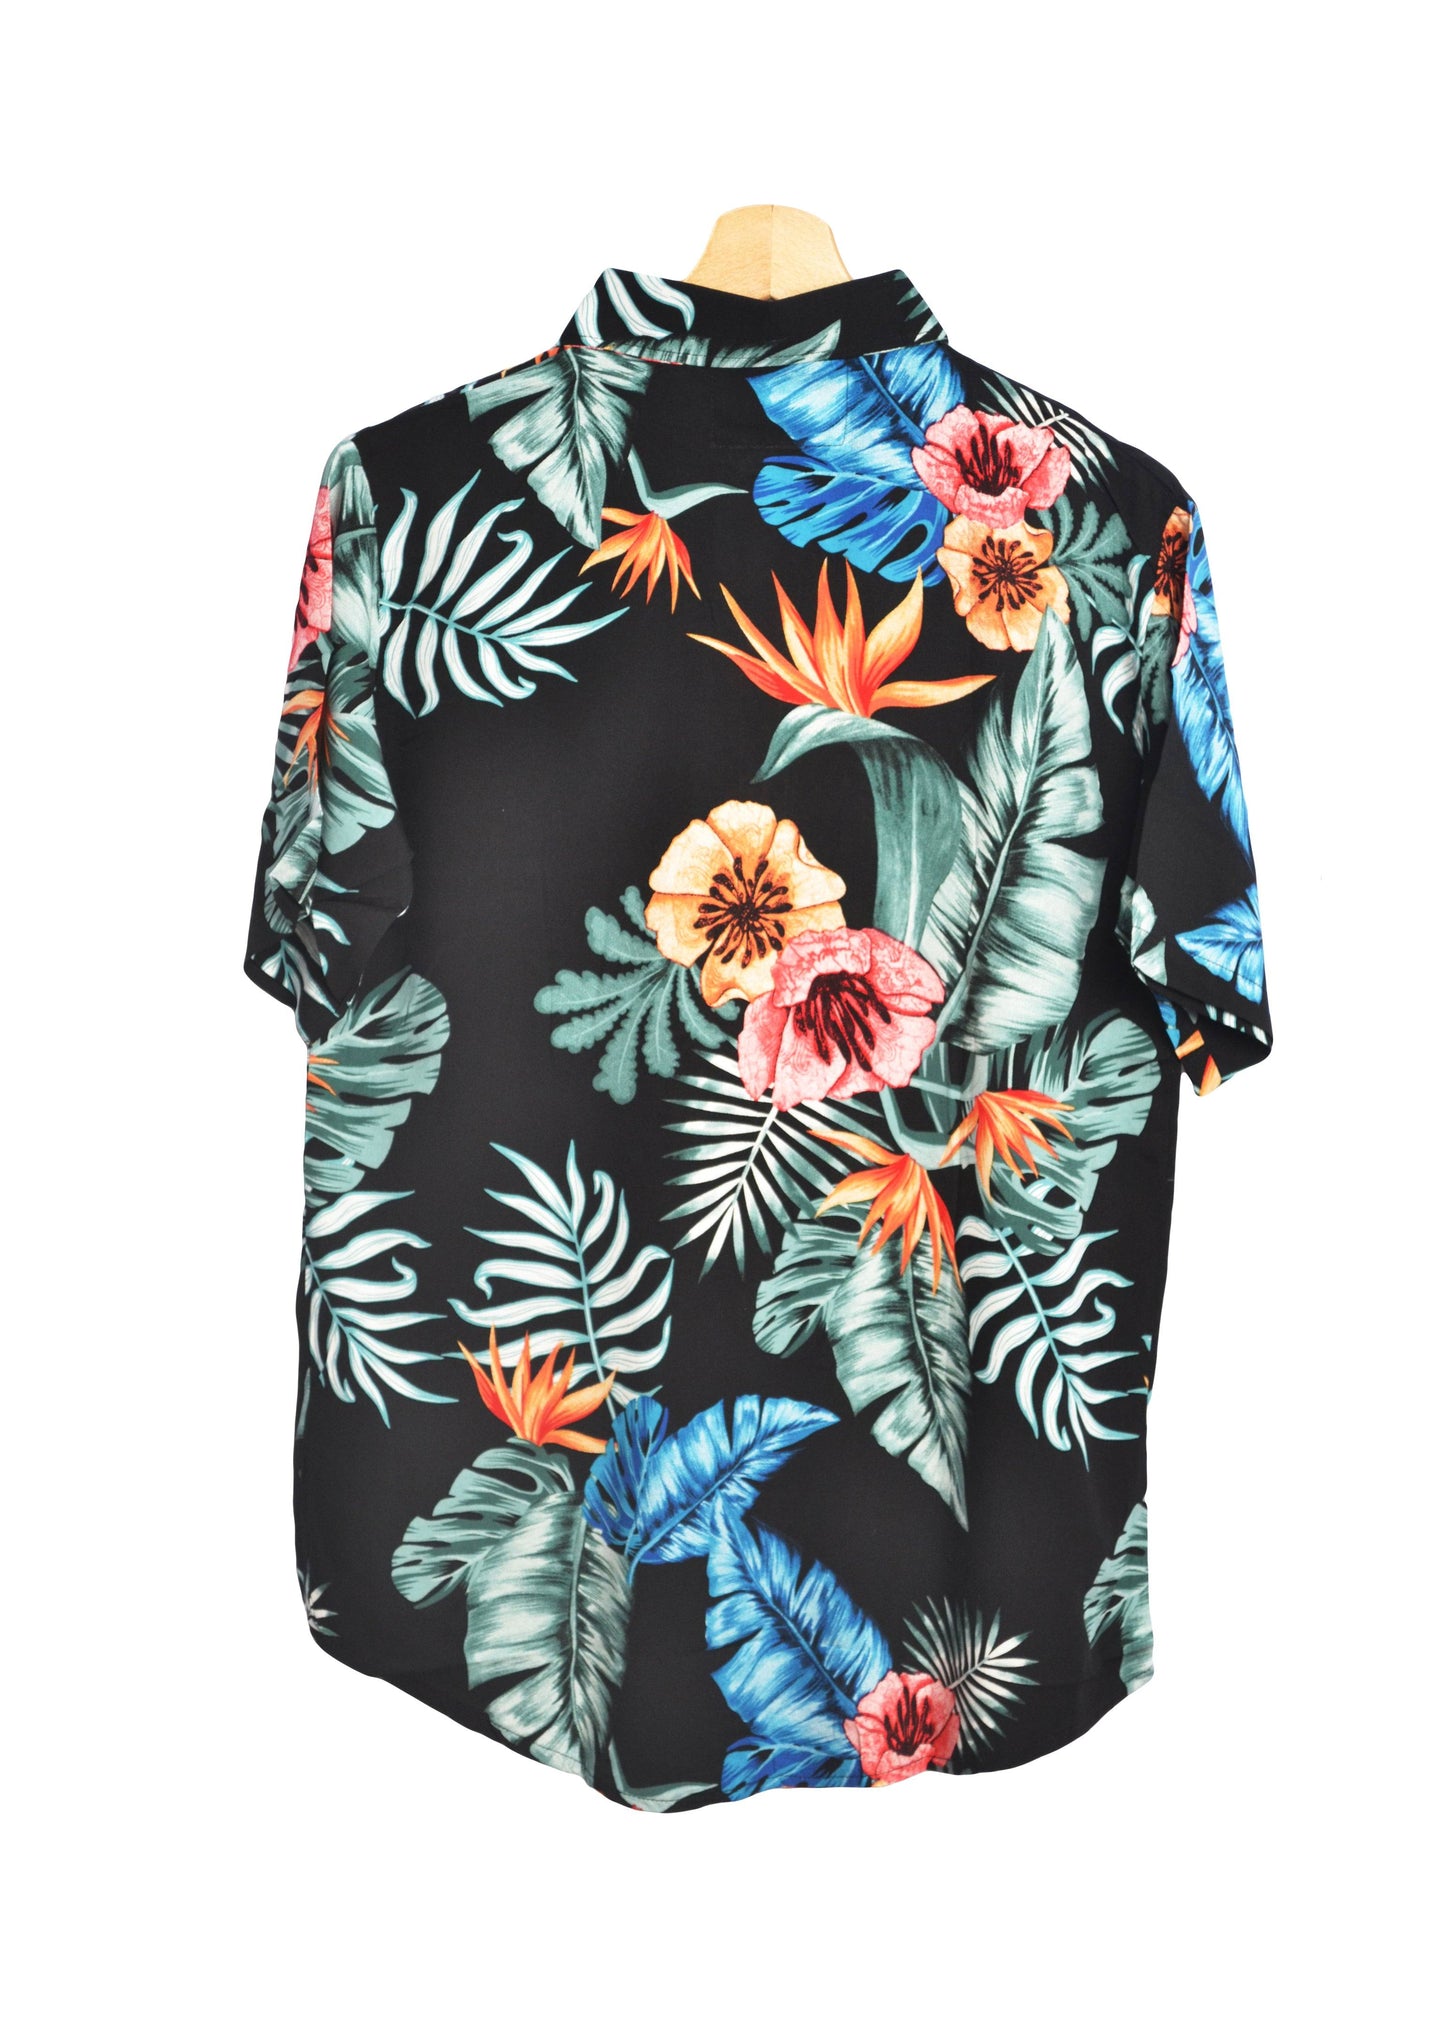 Vue dos chemise hawaienne noire à fleurs marque up hawaii -GL BOUTIK